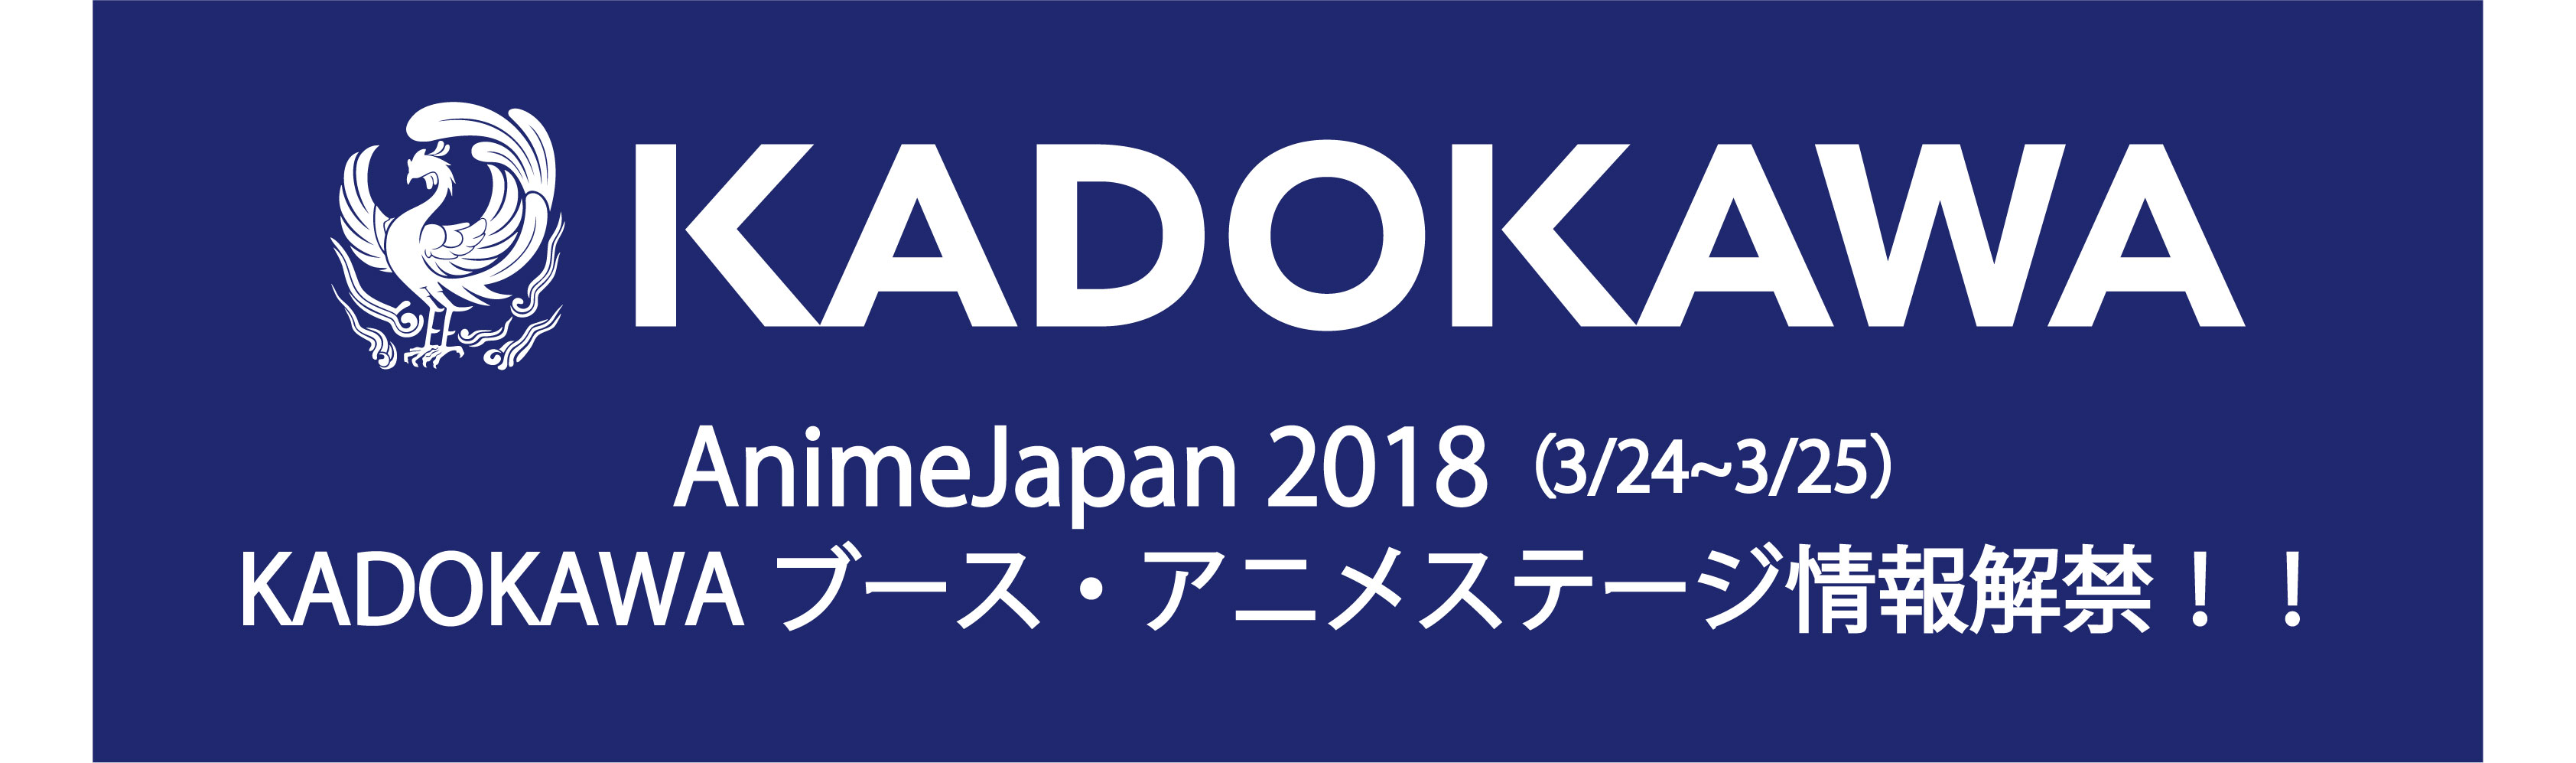 アニメジャパン2018 KADOKAWAブース・アニメステージ開催決定